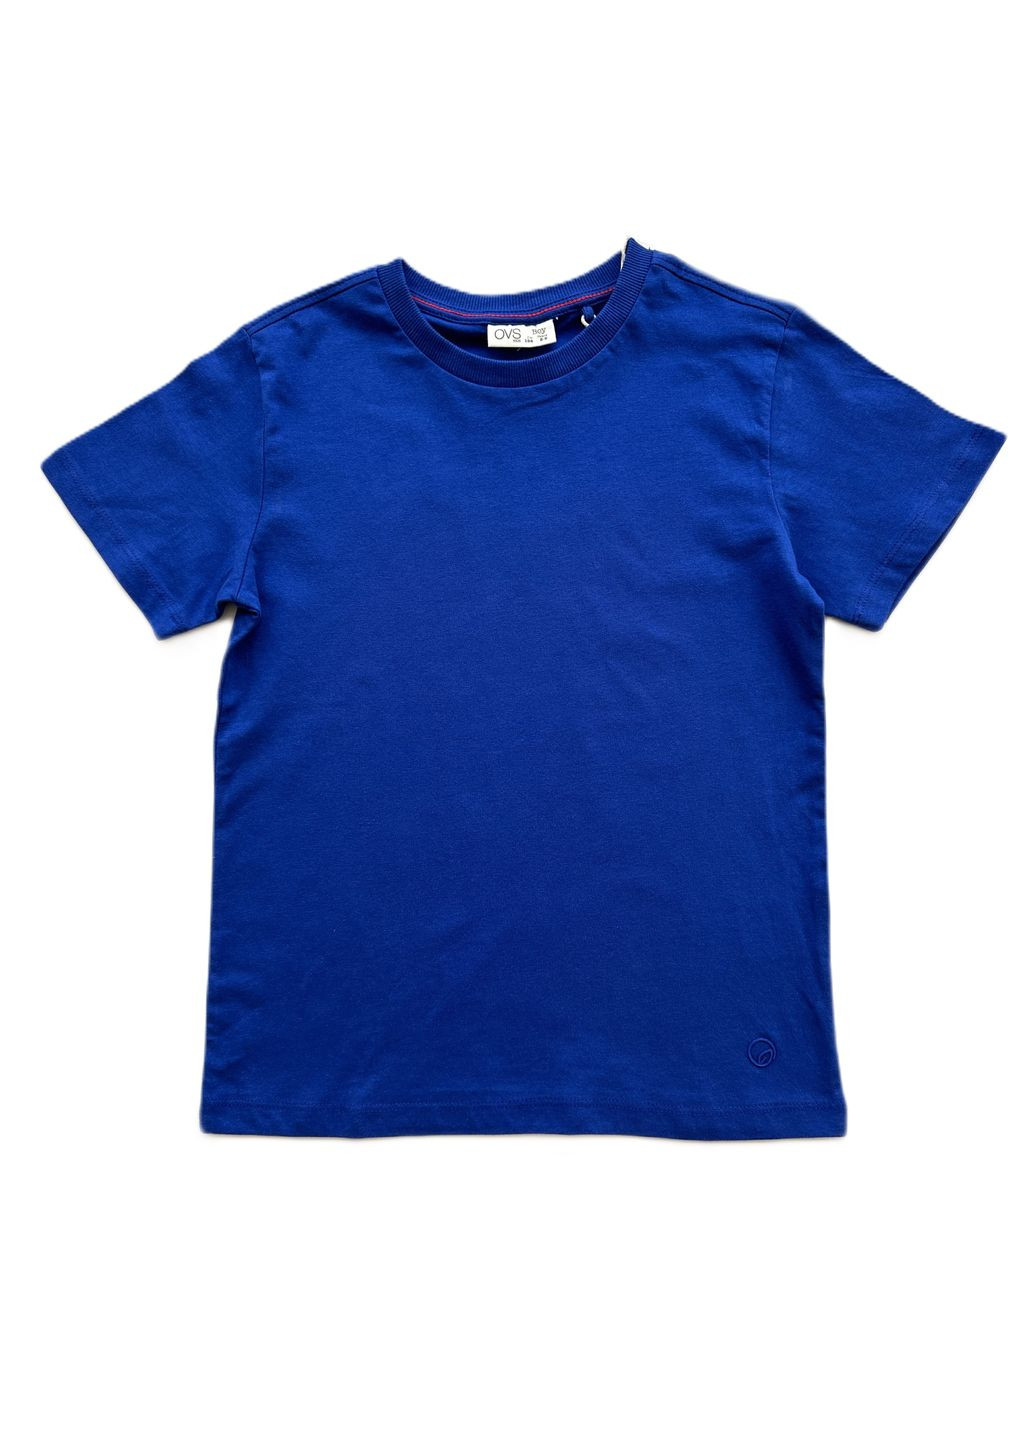 Синяя летняя футболка для парня синяя однотонная 2000-41 (134 см) OVS